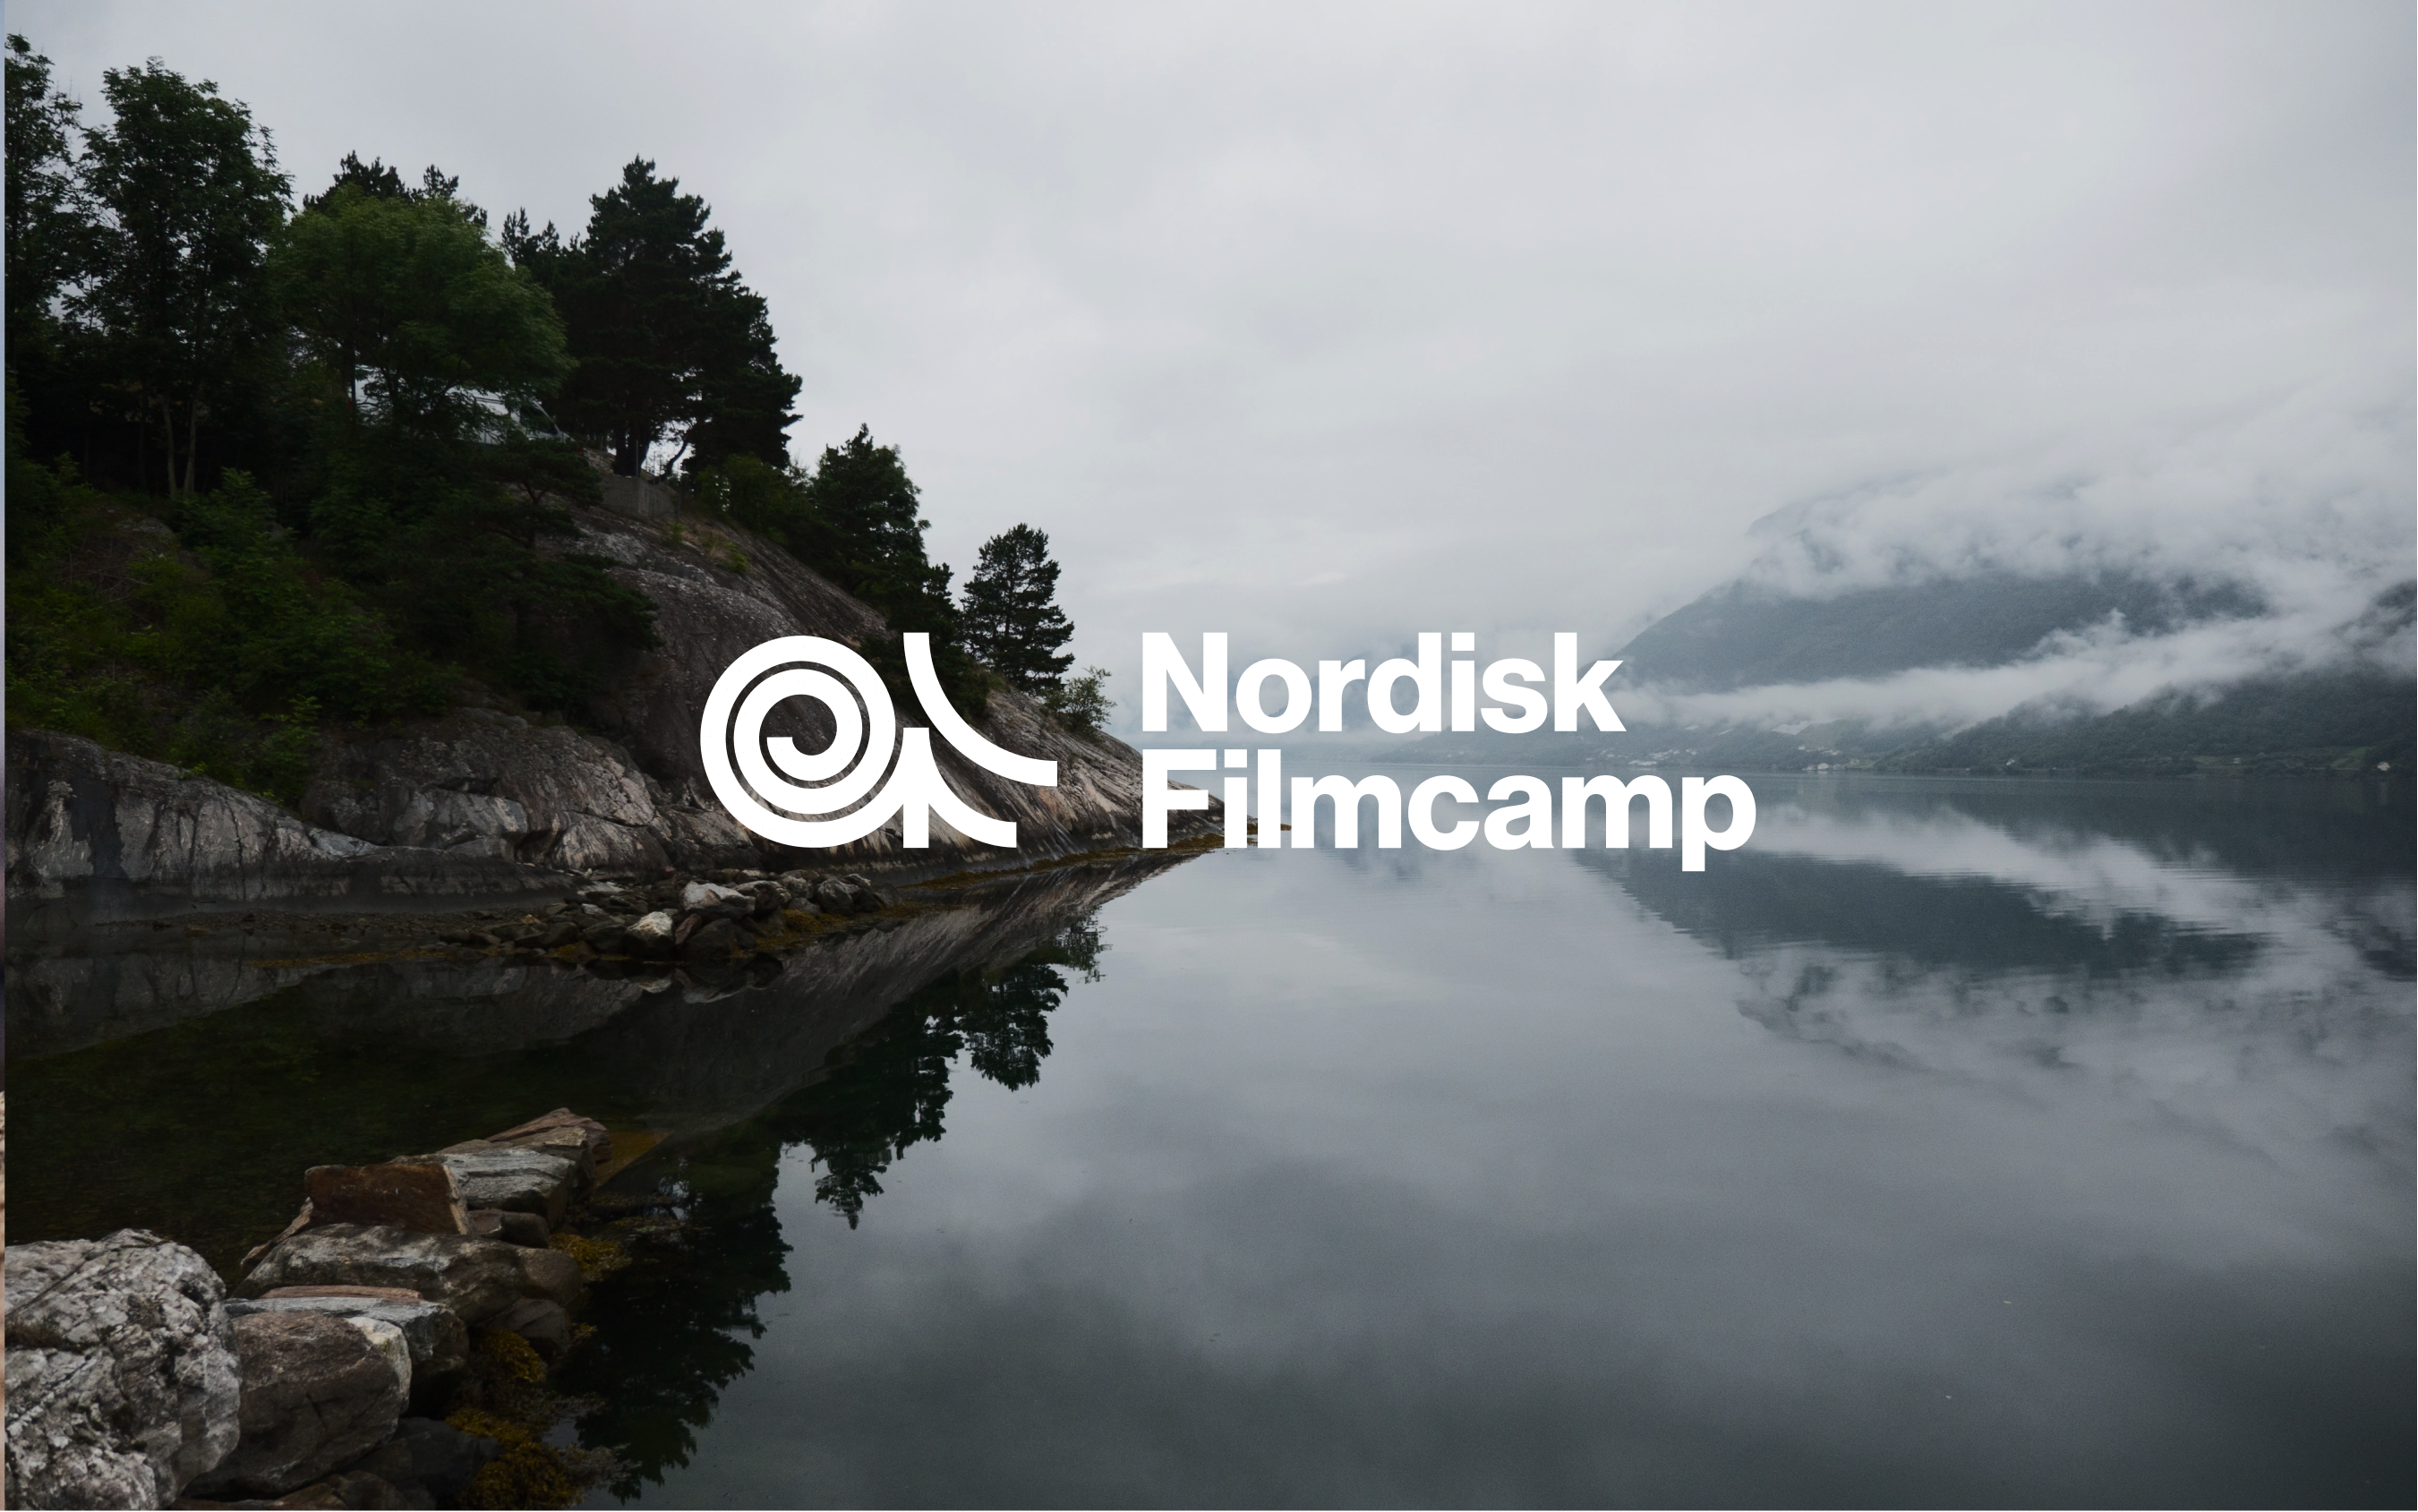 Nordisk-image1